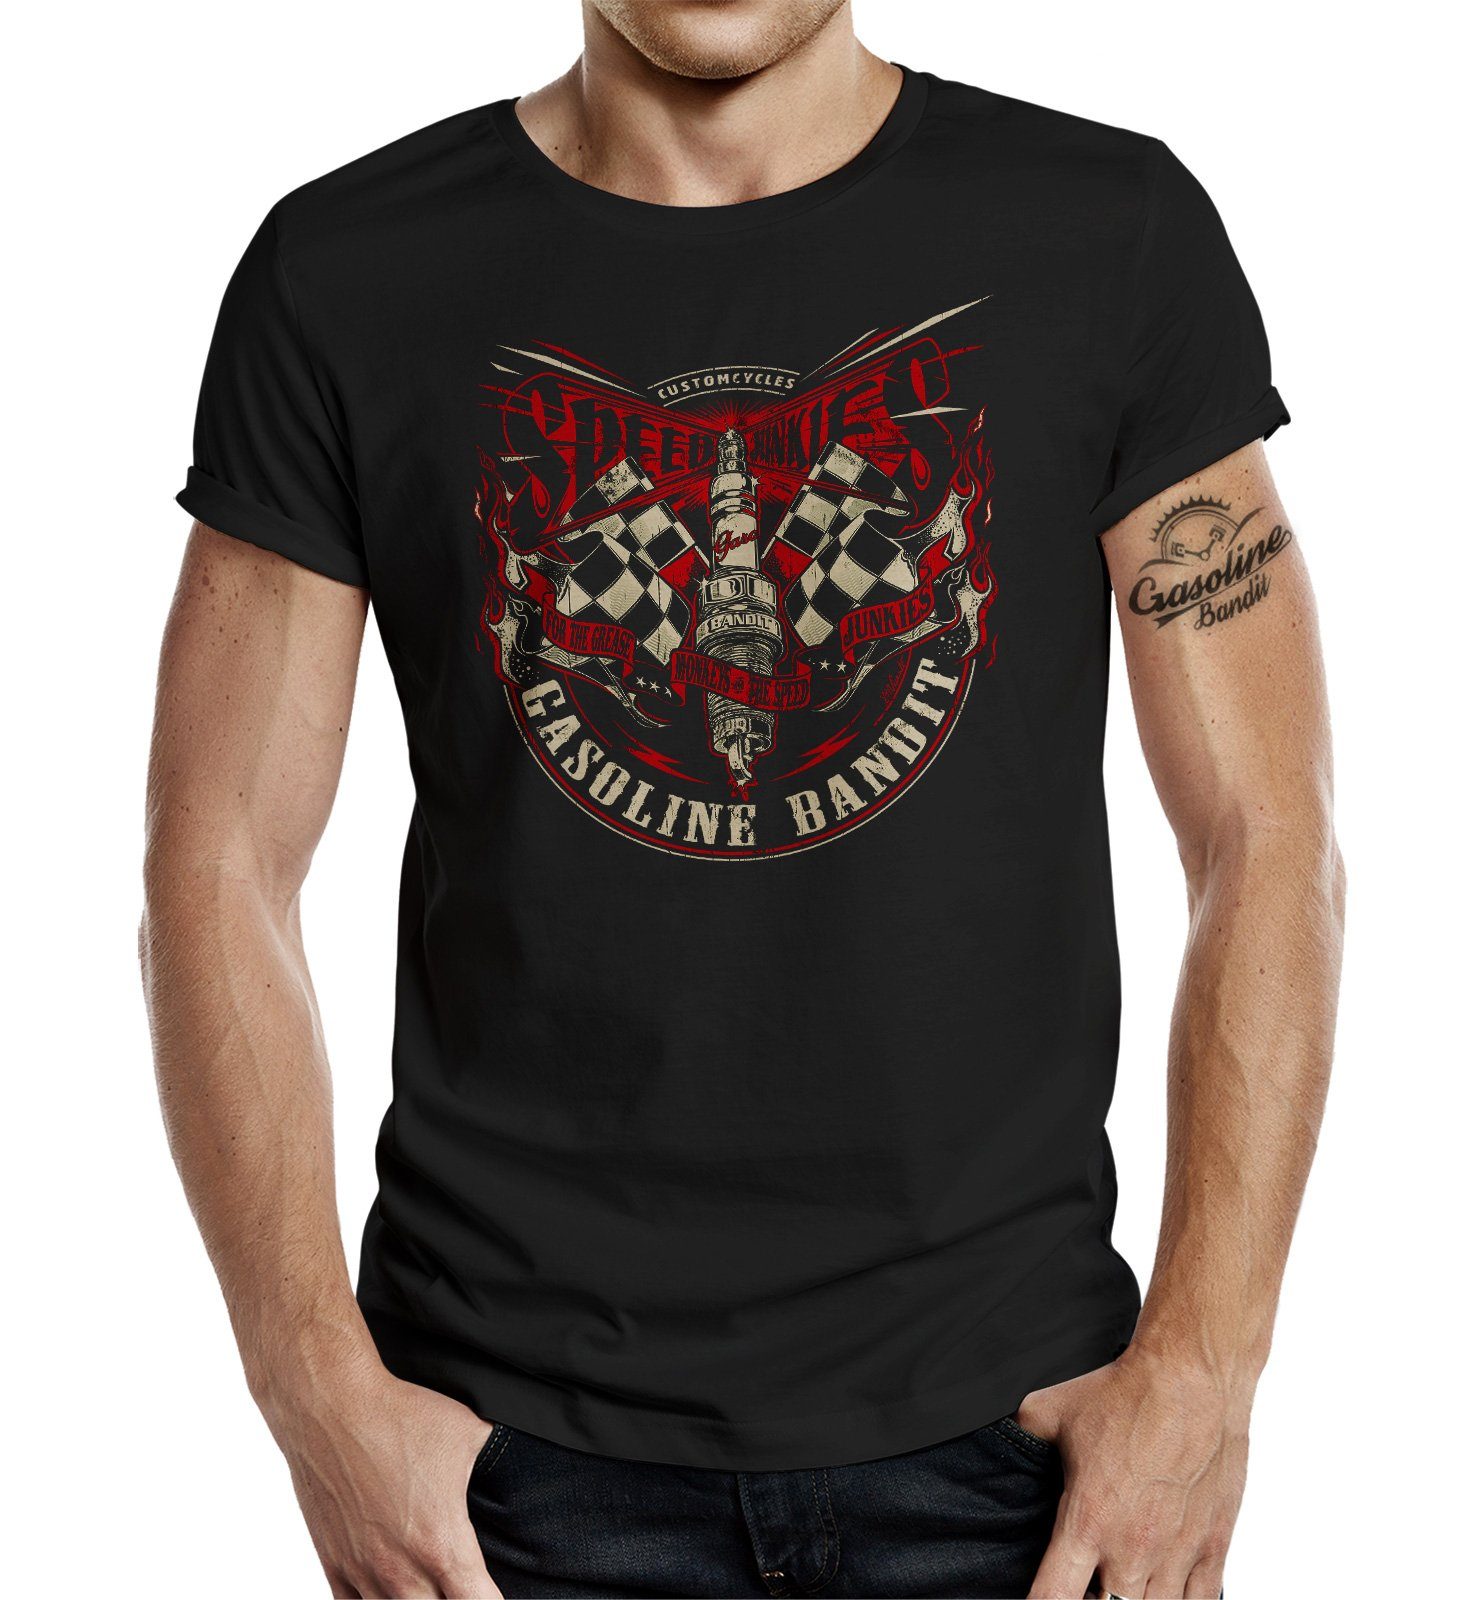 GASOLINE BANDIT® T-Shirt für Biker und Racer: Only for Speed Junkies, Spark | T-Shirts